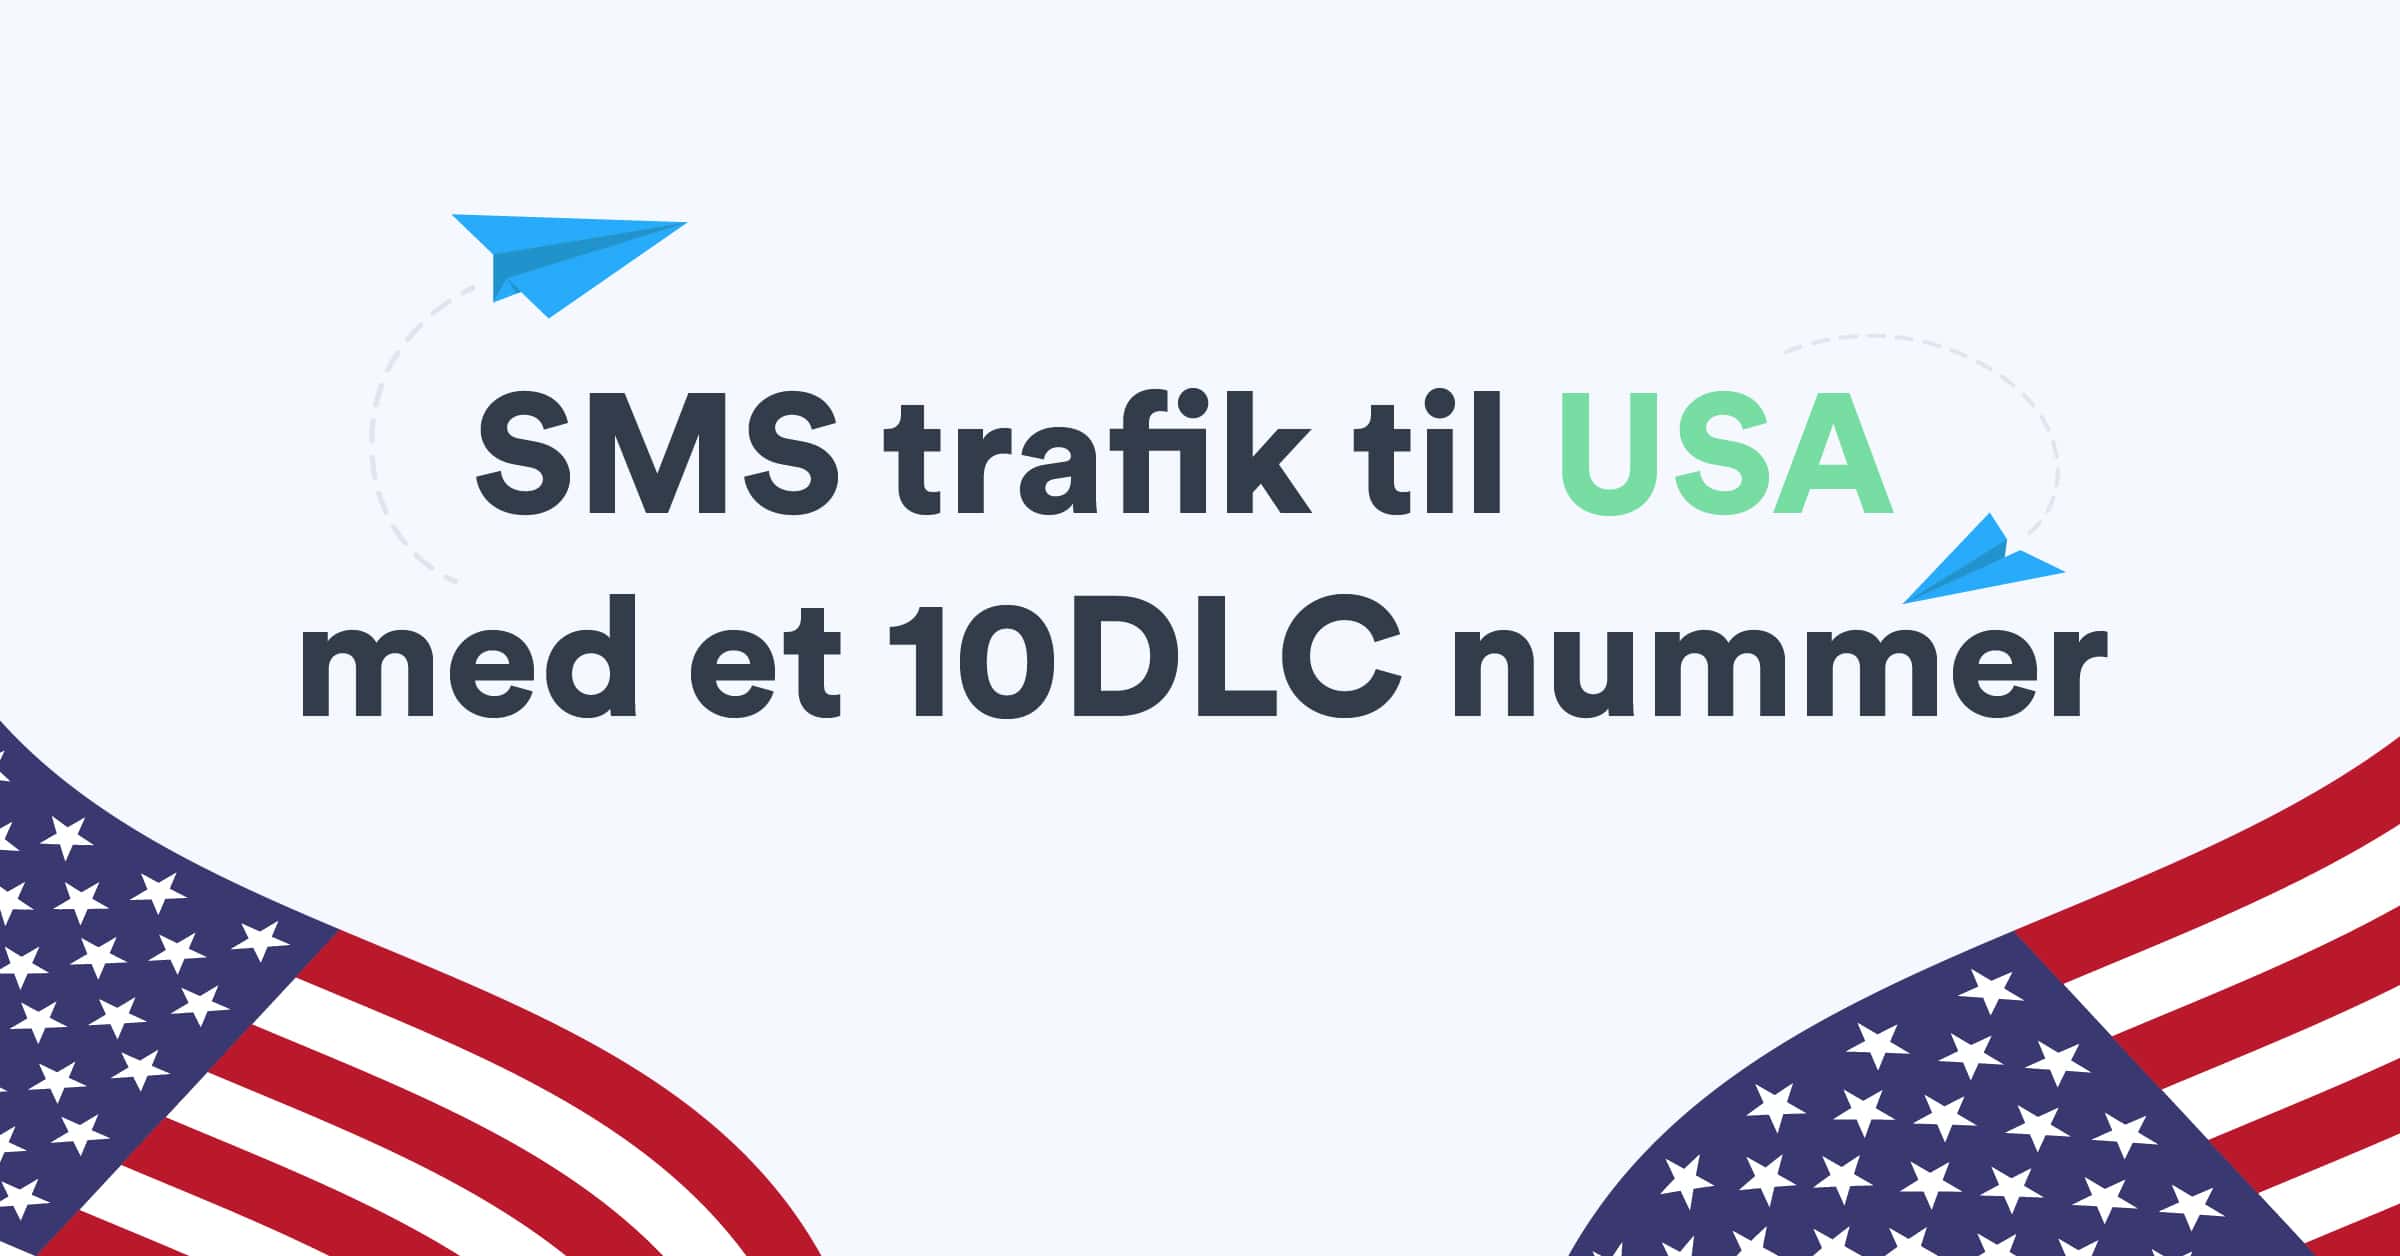 Kom i gang med at sende SMS trafik til USA med et 10DLC nummer